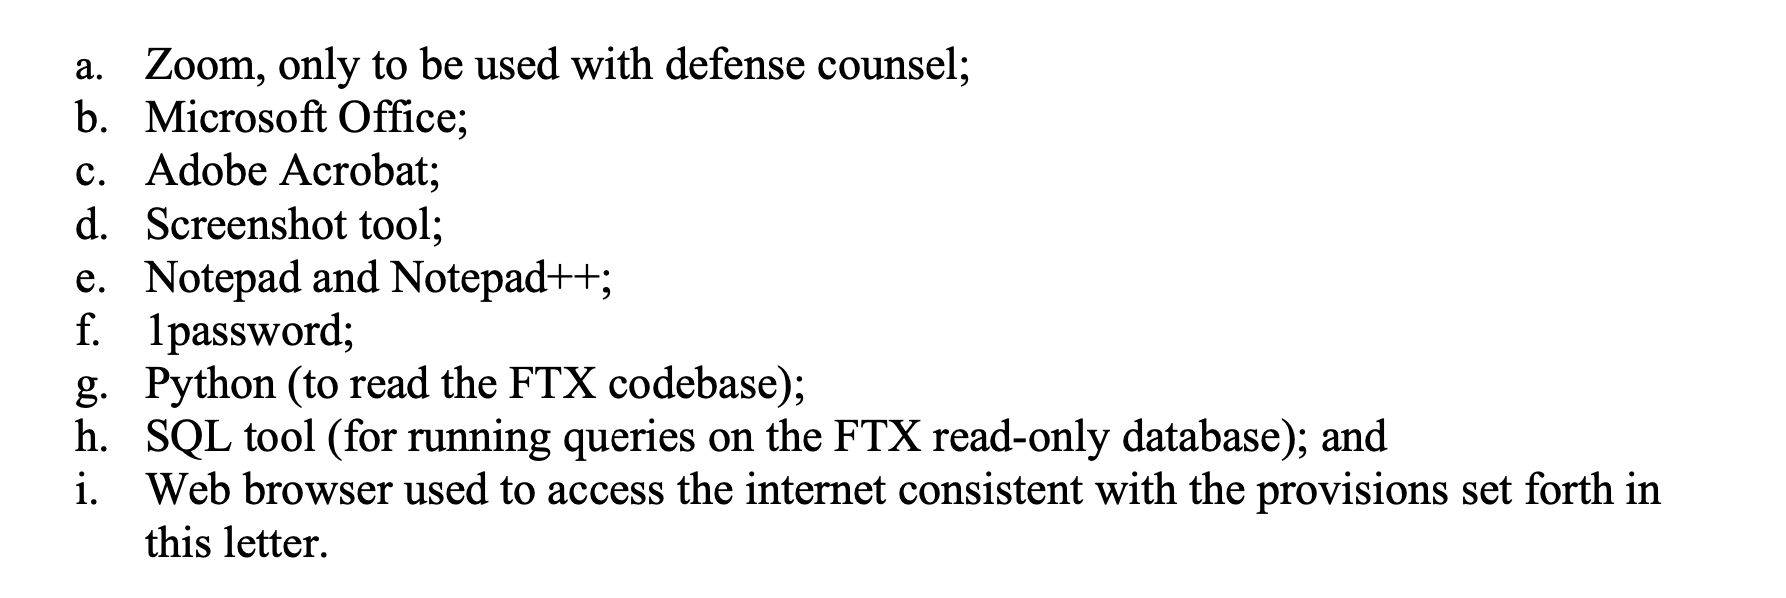 Что происходит с основателем криптобиржи FTX. Список разрешённых приложений для основателя криптобиржи FTX Сэма Банкмана-Фрида. Фото.